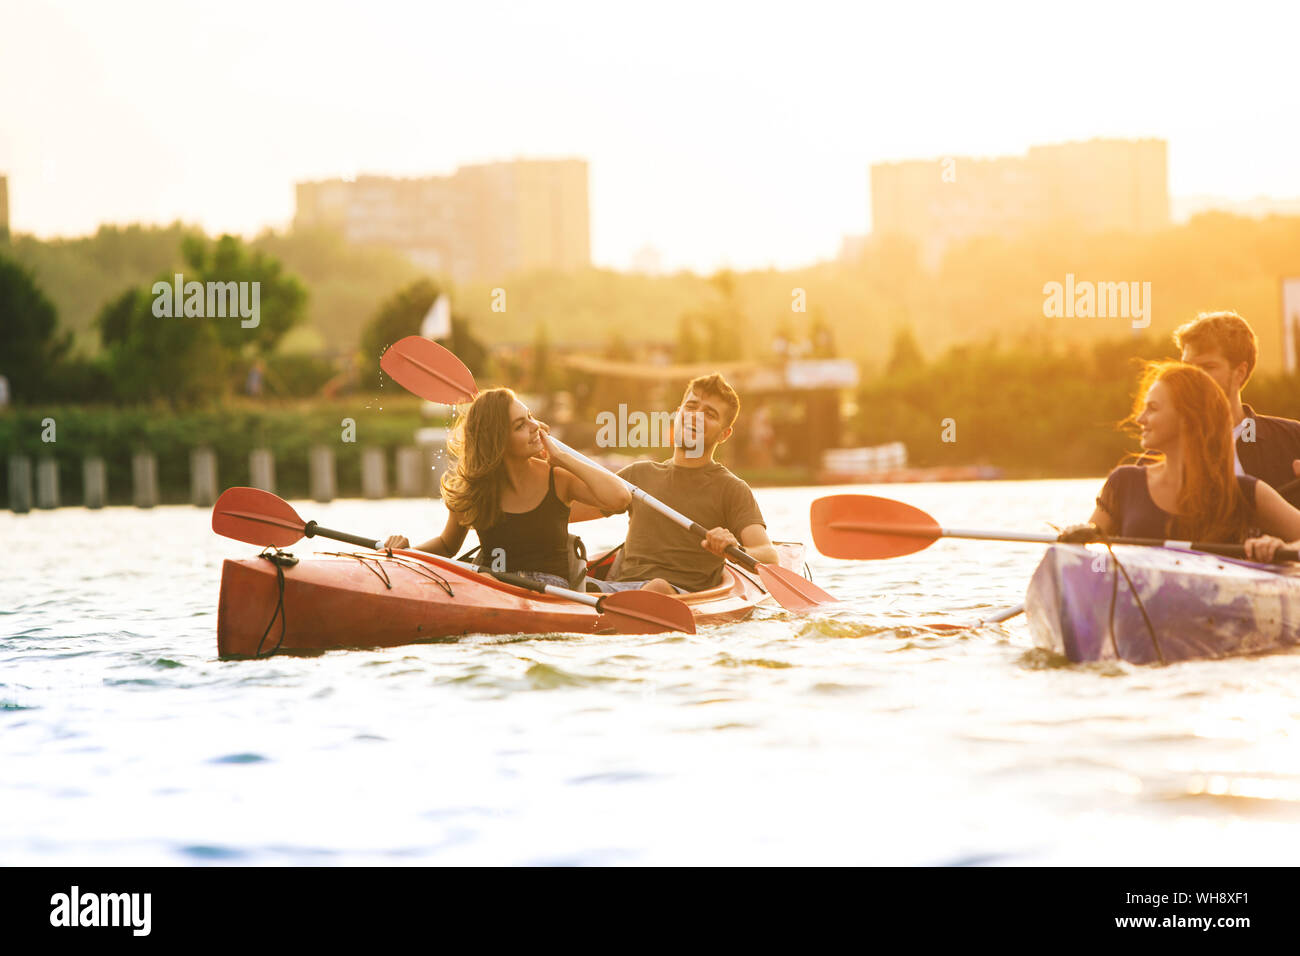 Glückliche Junge kaukasier Gruppe von Freunden Kajakfahren auf dem Fluss mit Sonnenuntergang im Hintergrund. Spaß in der Freizeit. Gerne männliche und weibliche Modell laughting auf dem Kajak. Sport, Beziehungen Konzept. Stockfoto